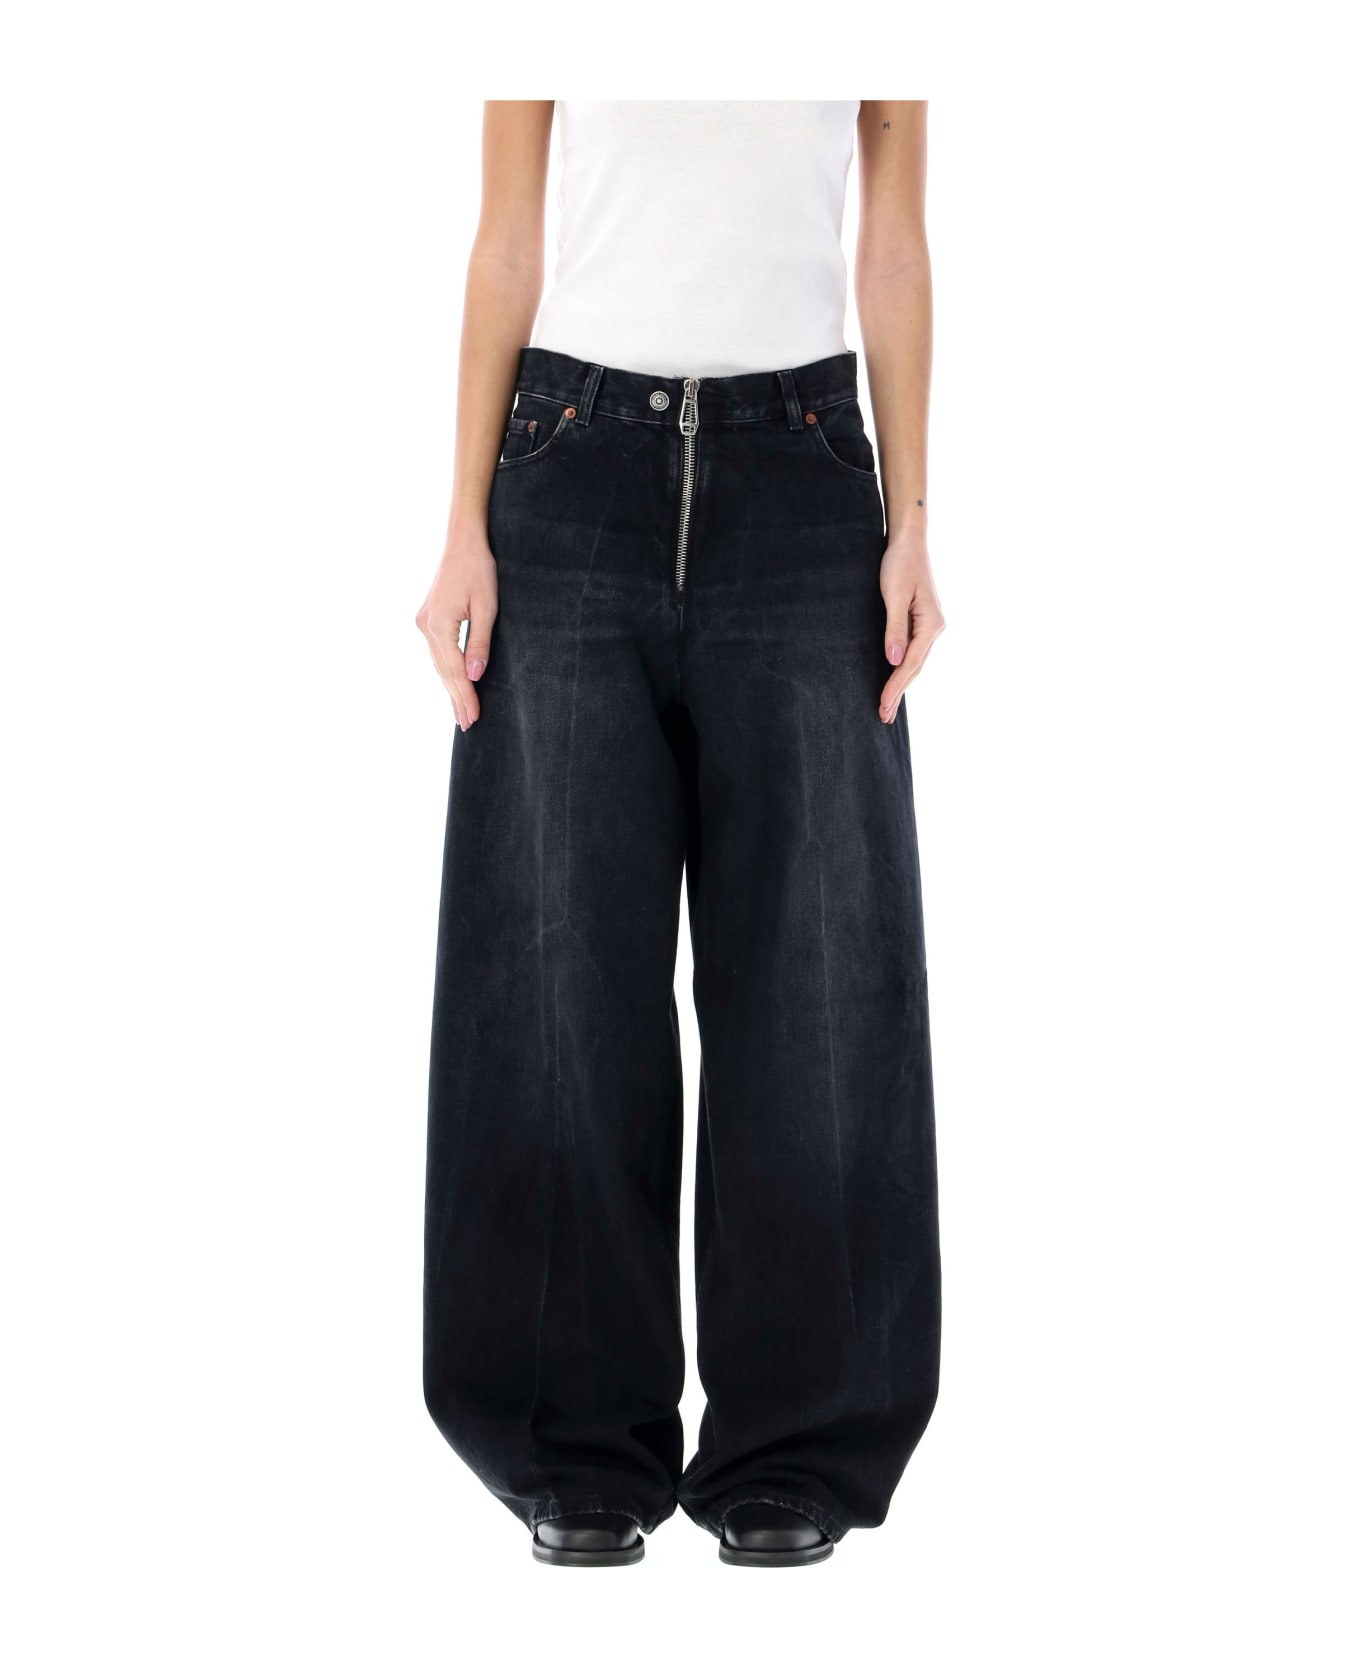 Haikure Bethany Zipped Jeans - BASSANO BLACK